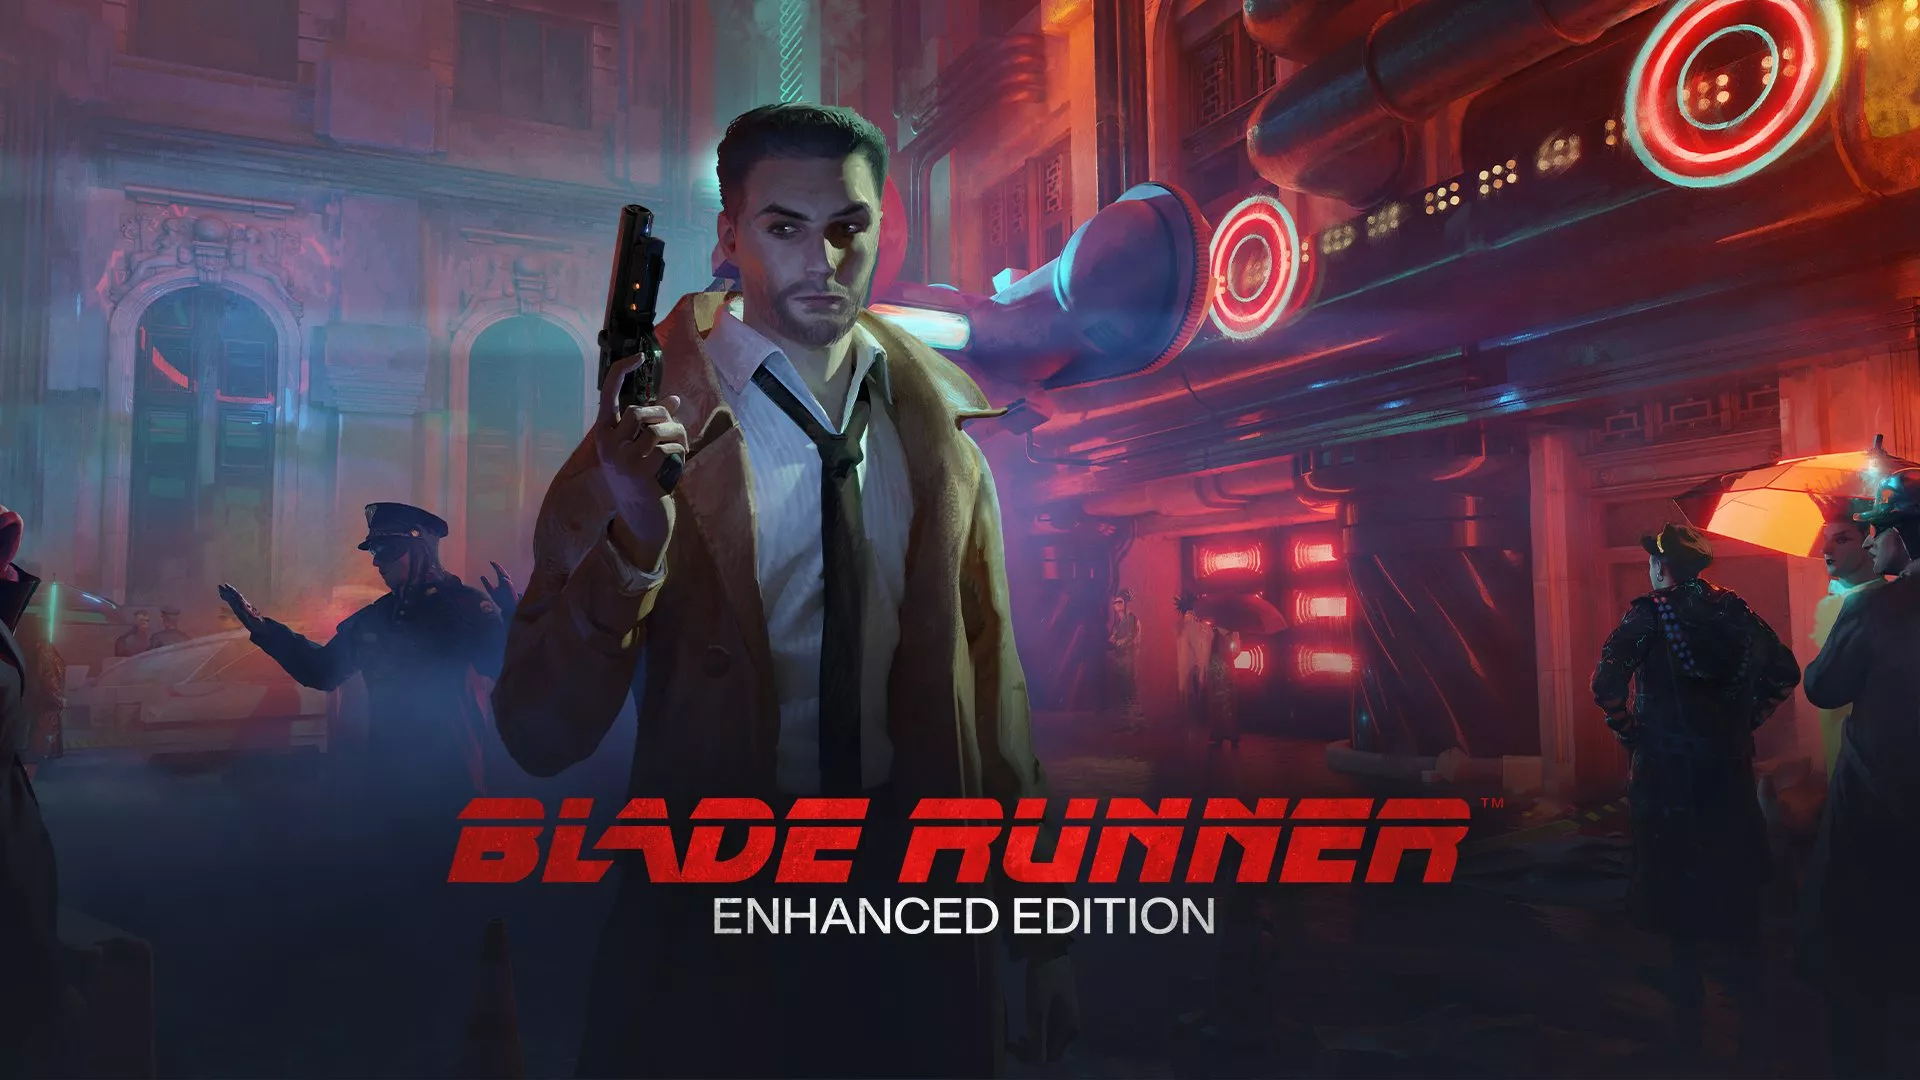 Blade Runner wurde in einer Enhanced Edition erneut veröffentlicht Heropic